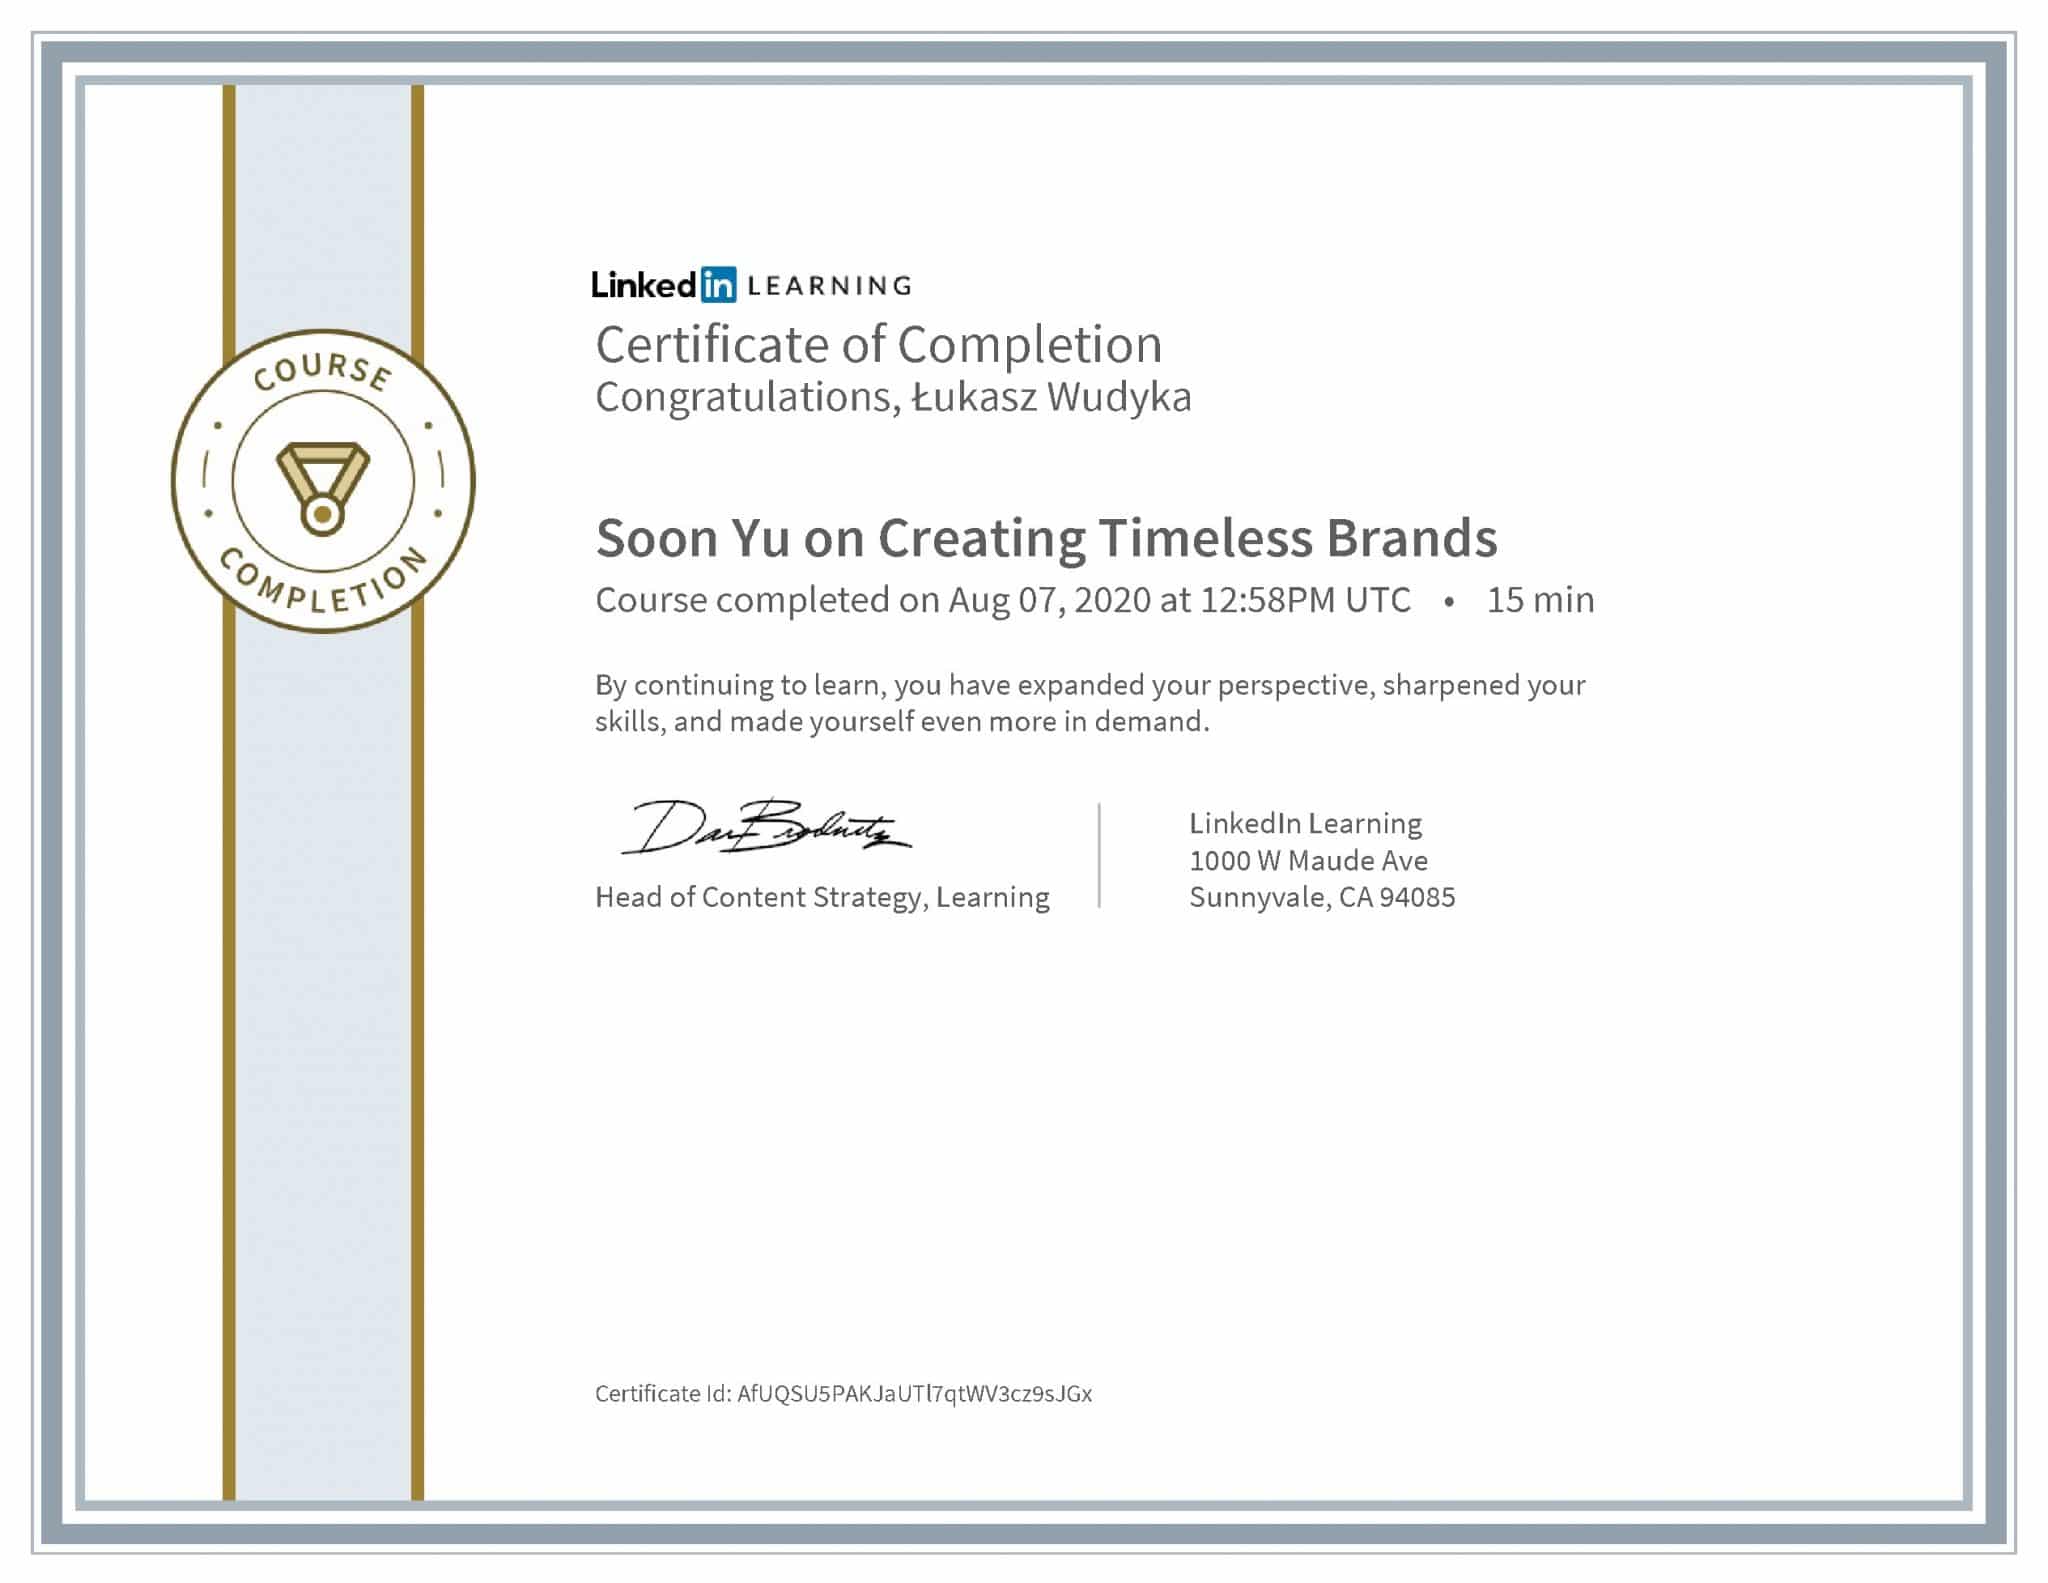 Łukasz Wudyka certyfikat LinkedIn Soon Yu on Creating Timeless Brands